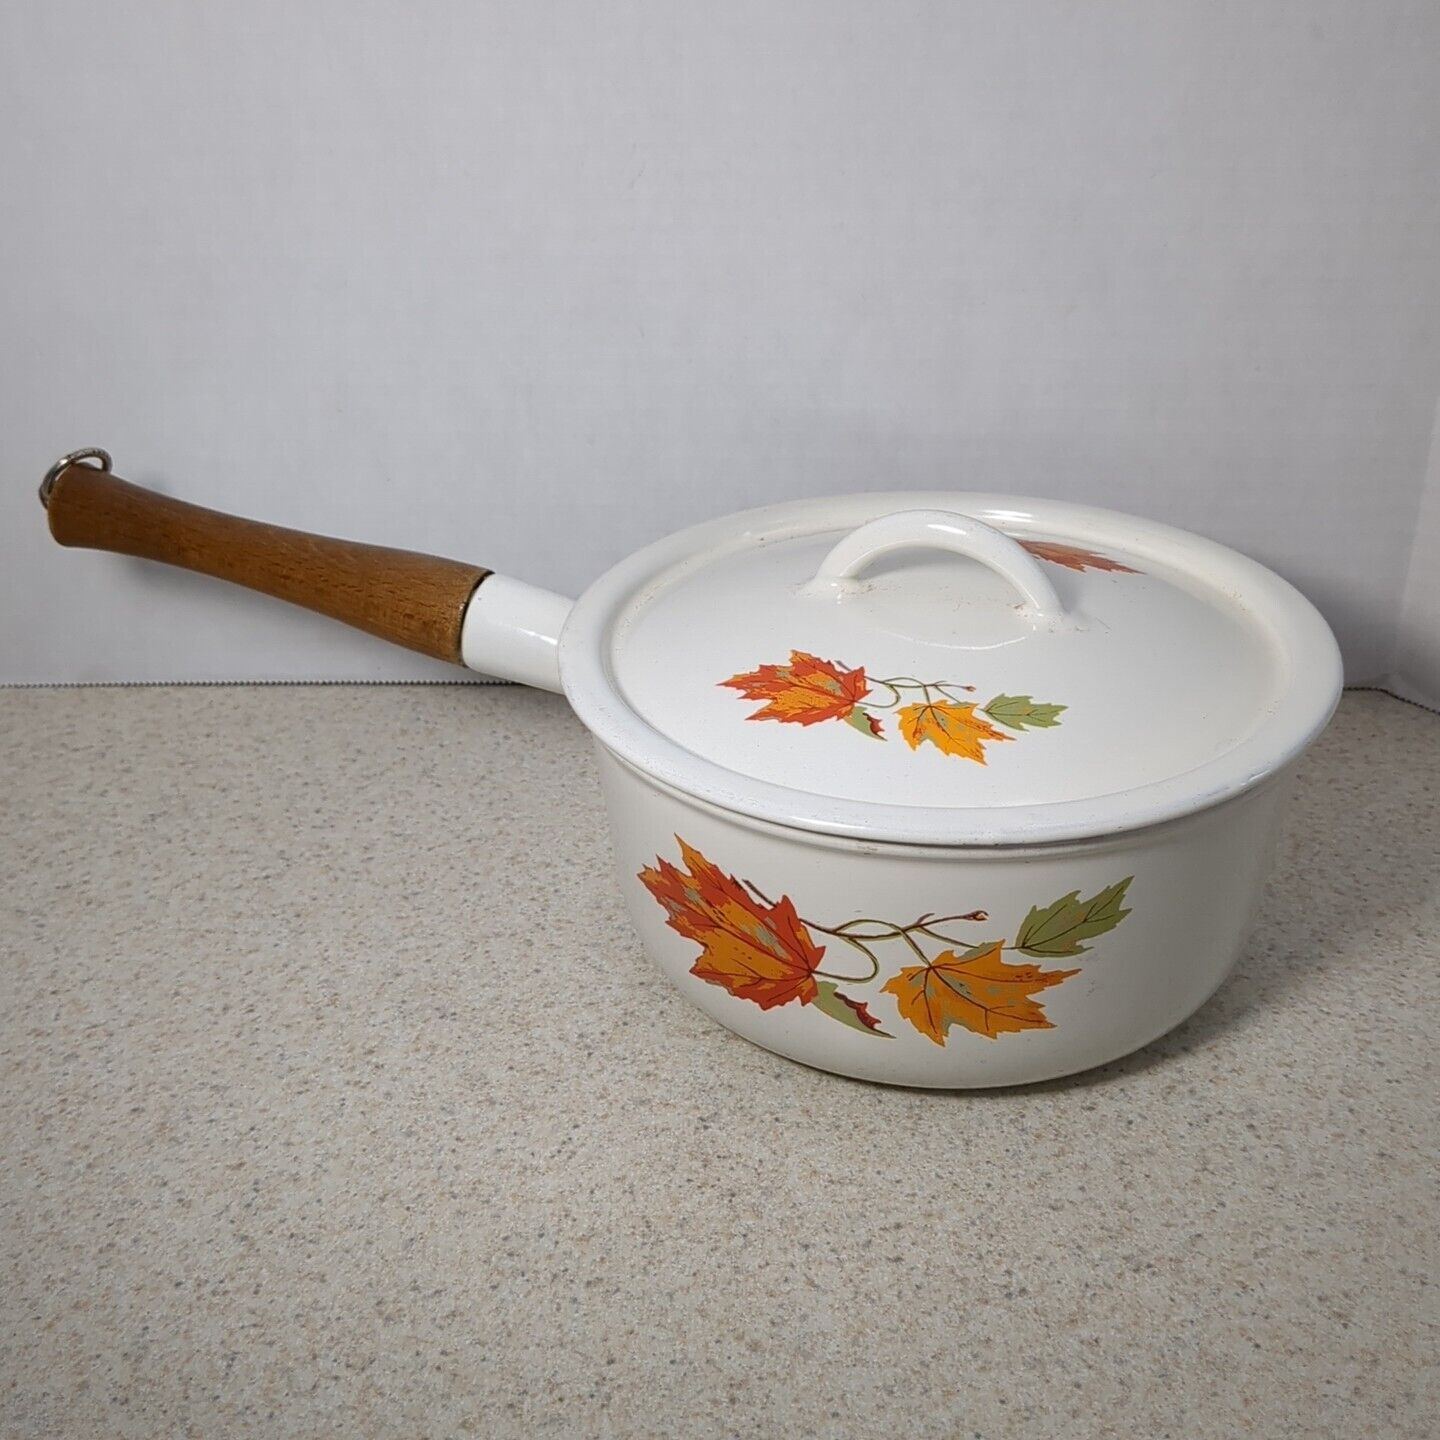 Vintage 2 qt DESCOWARE Enameled Cast Iron Round Sauce Pan Pot Fall Maple Leaf